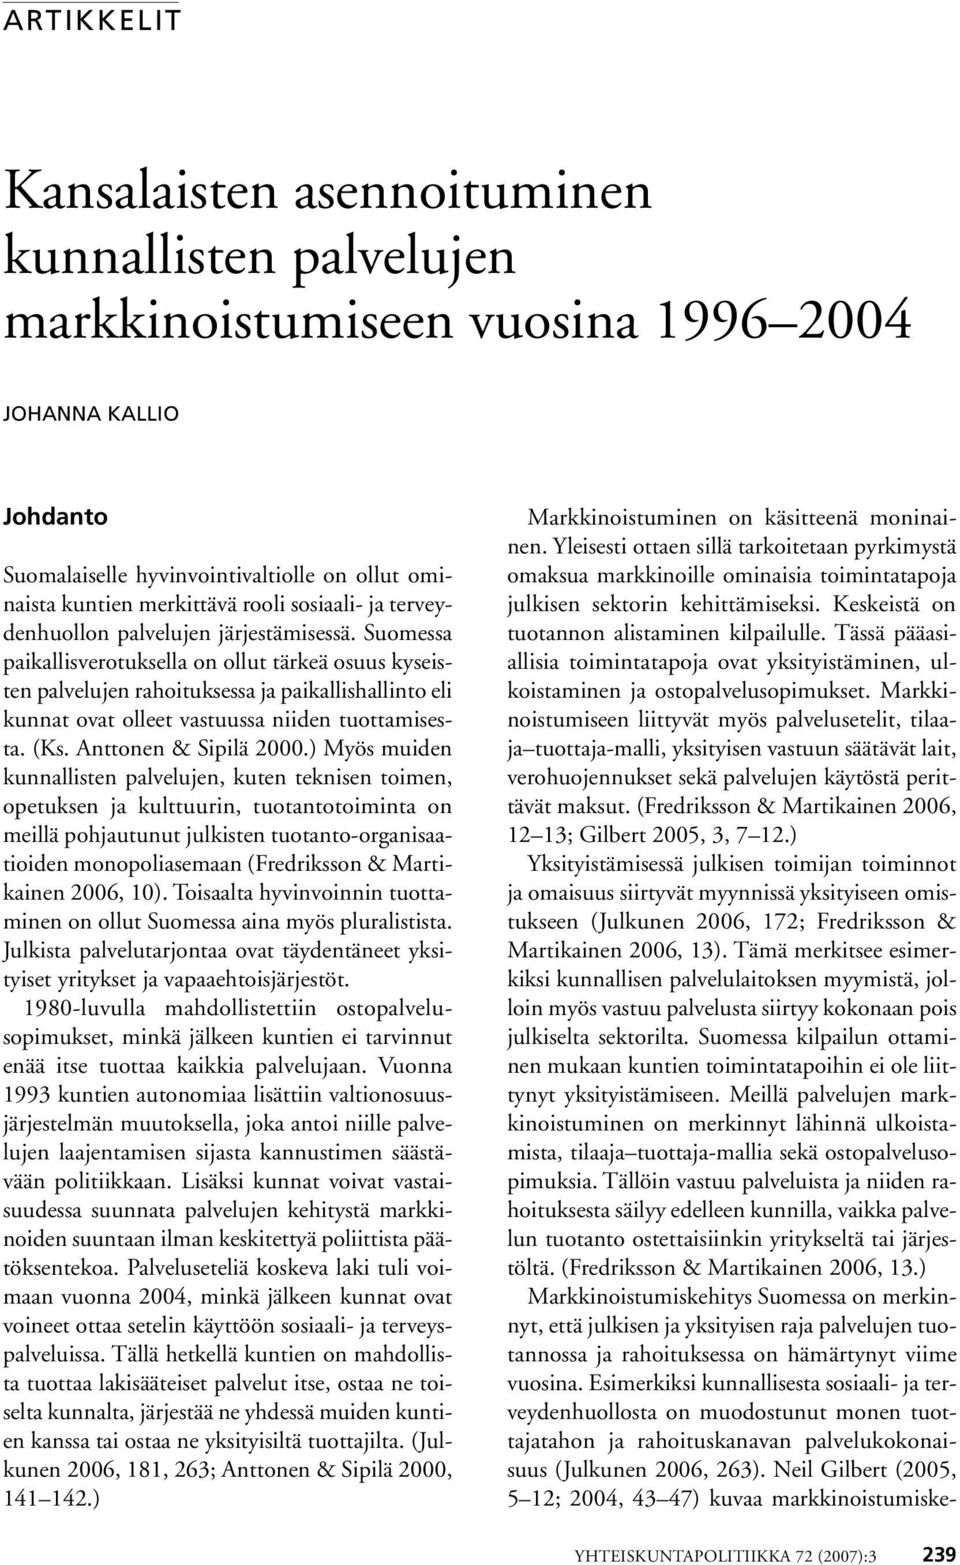 Suomessa paikallisverotuksella on ollut tärkeä osuus kyseisten palvelujen rahoituksessa ja paikallishallinto eli kunnat ovat olleet vastuussa niiden tuottamisesta. (Ks. Anttonen & Sipilä 2000.